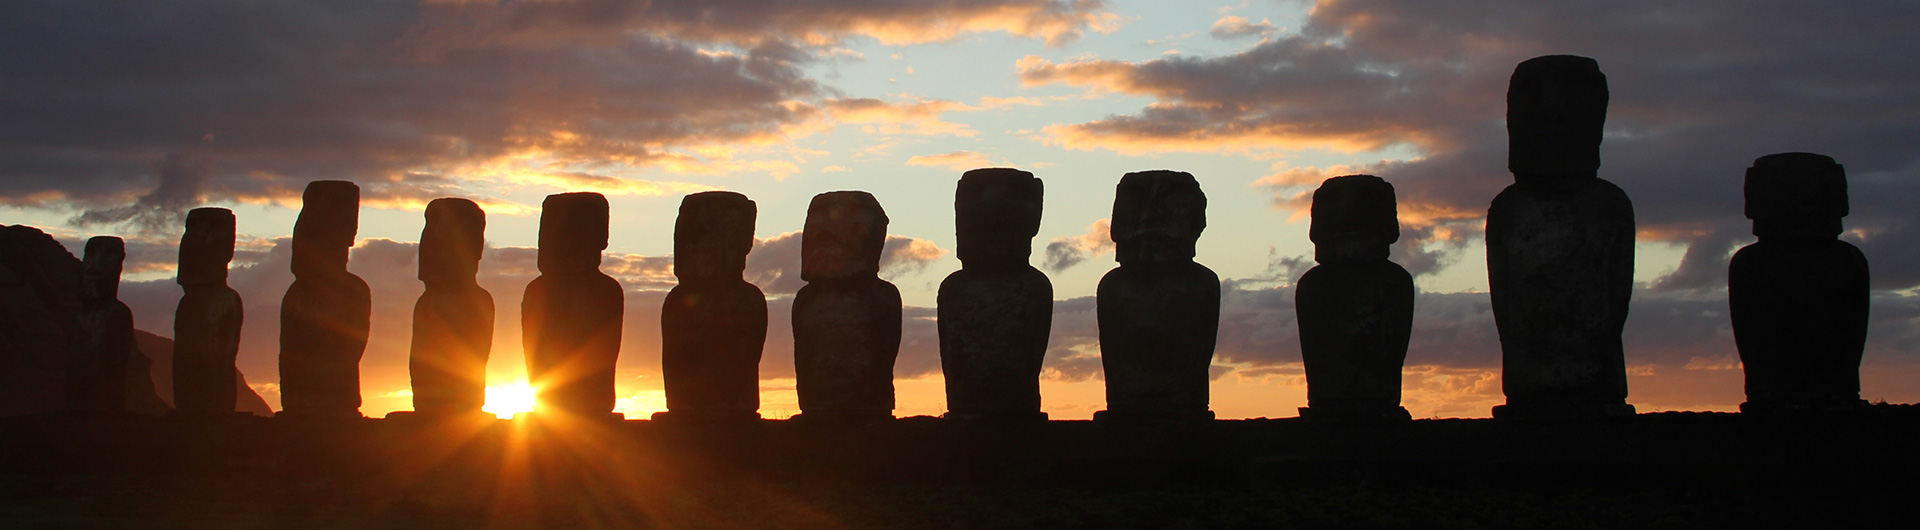 Moai statues on Easter Island, Chile